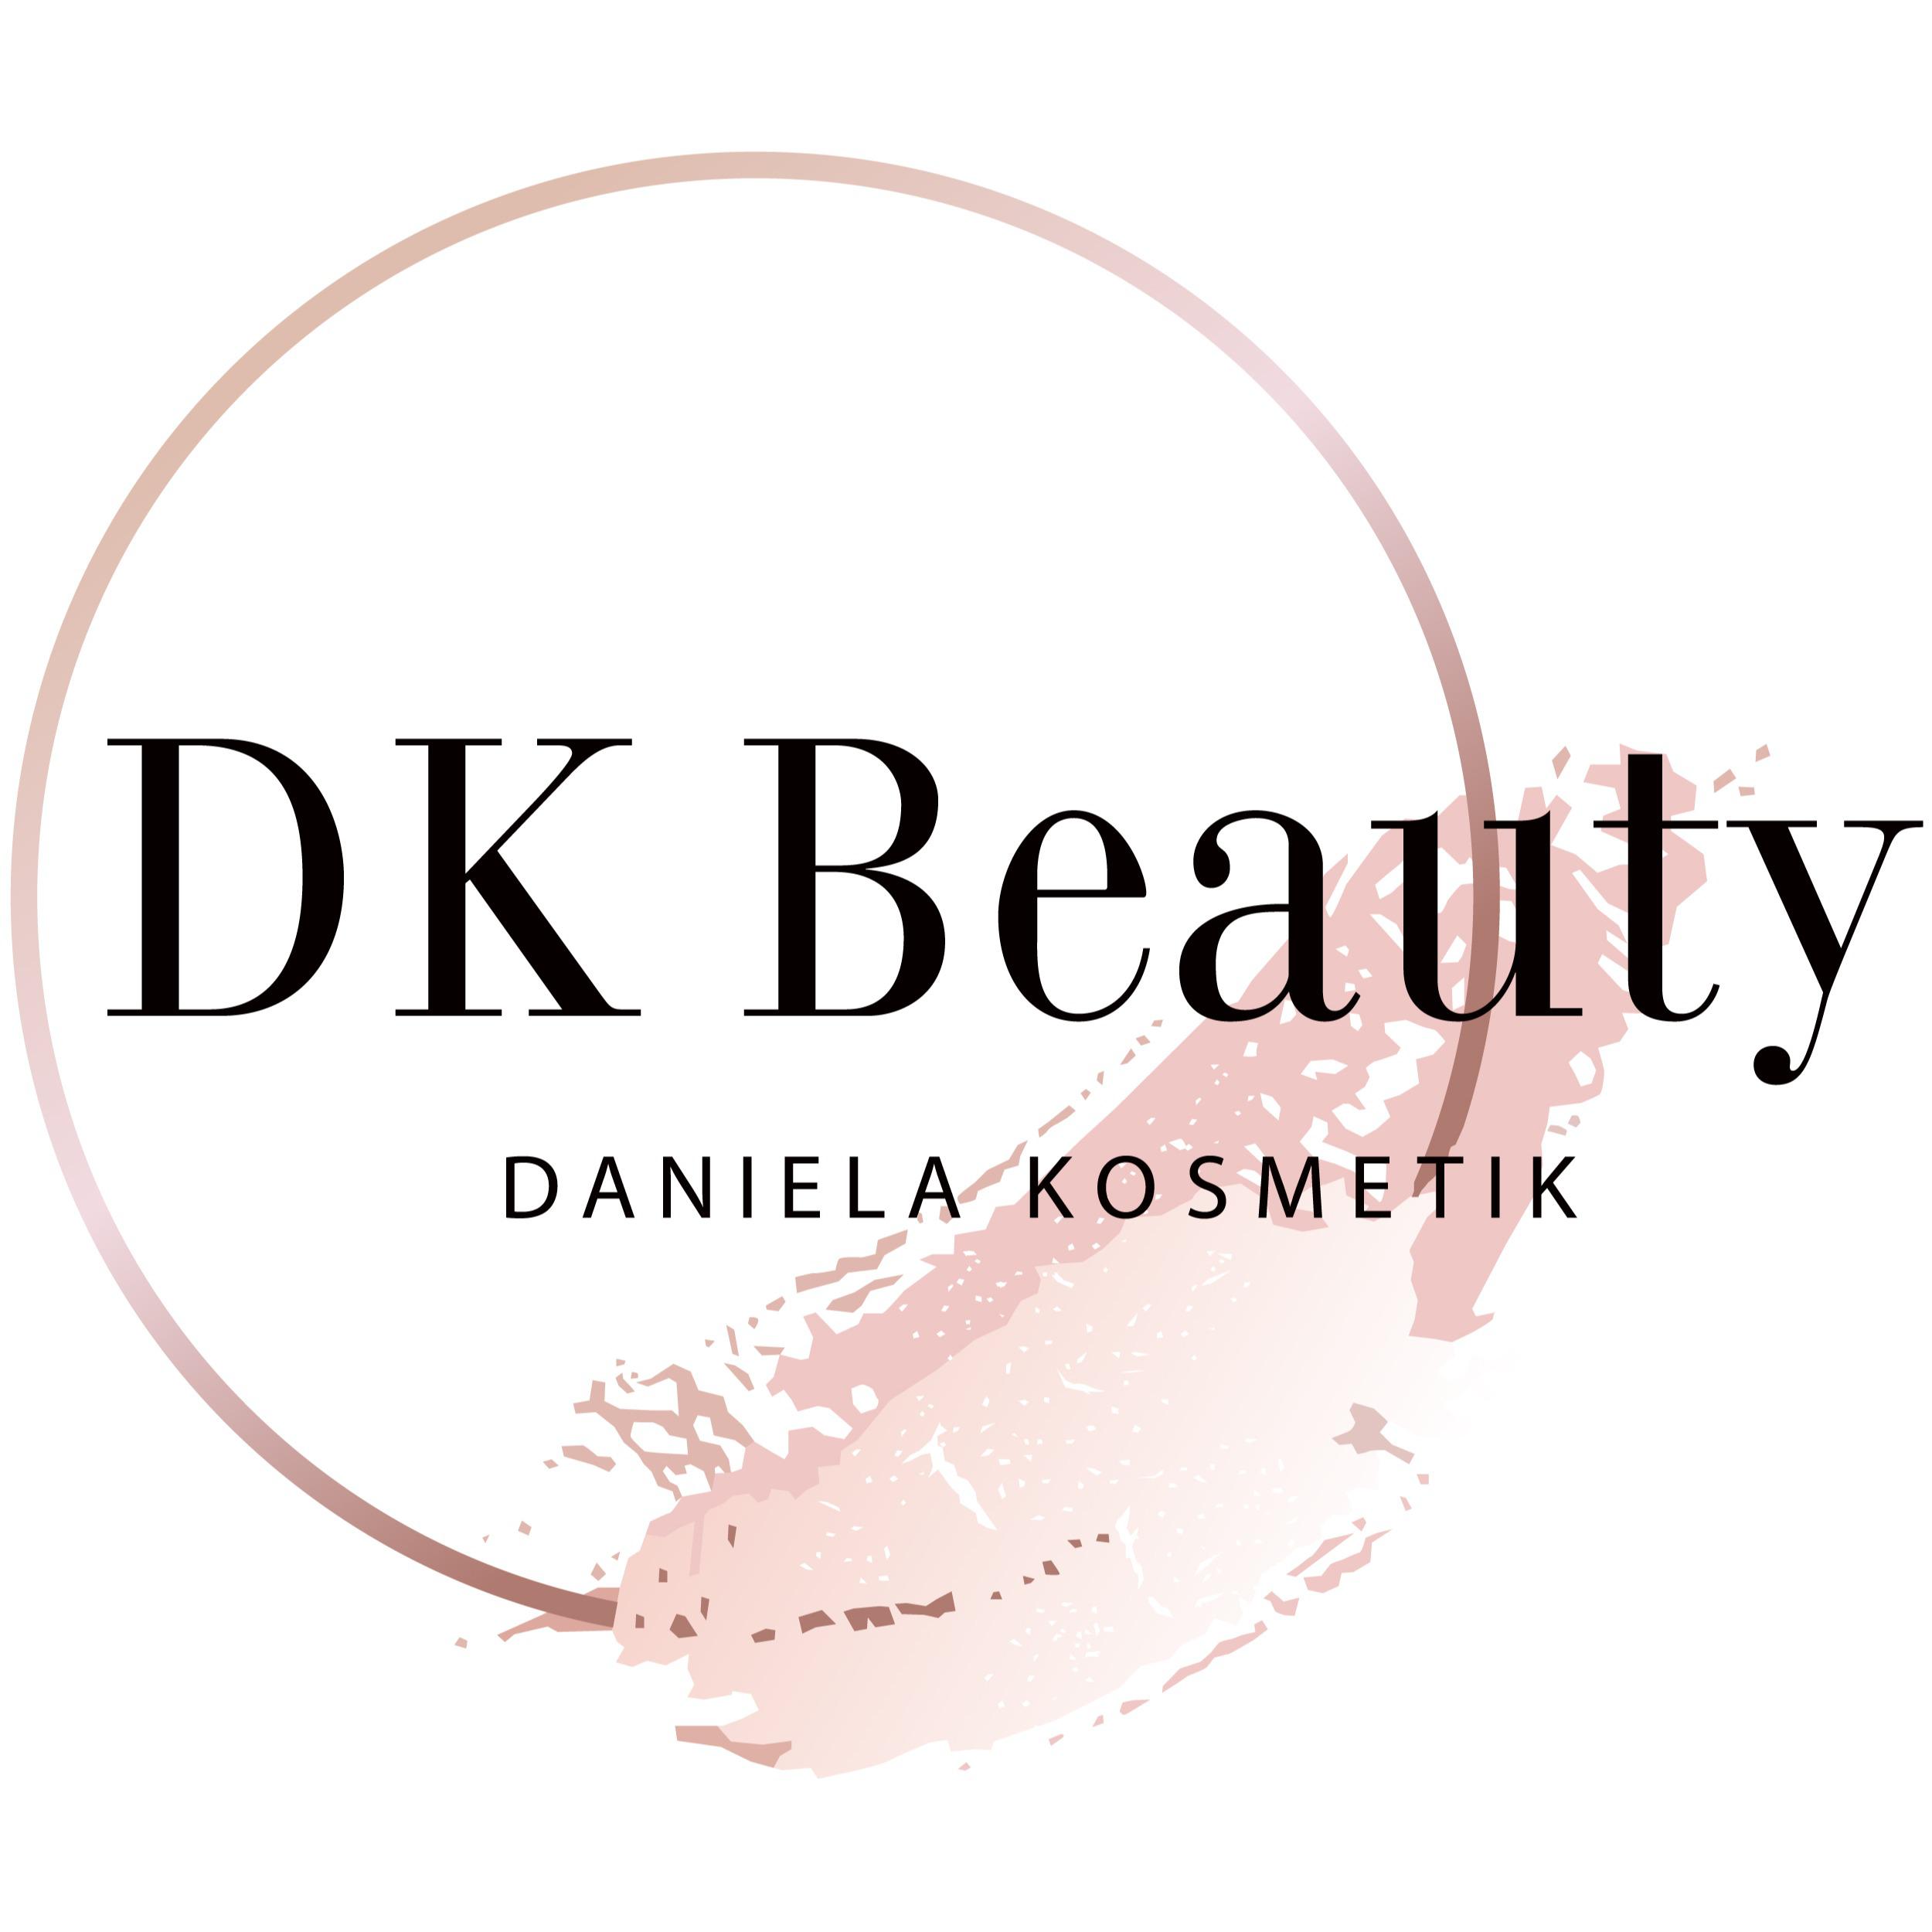 DK Beauty in München